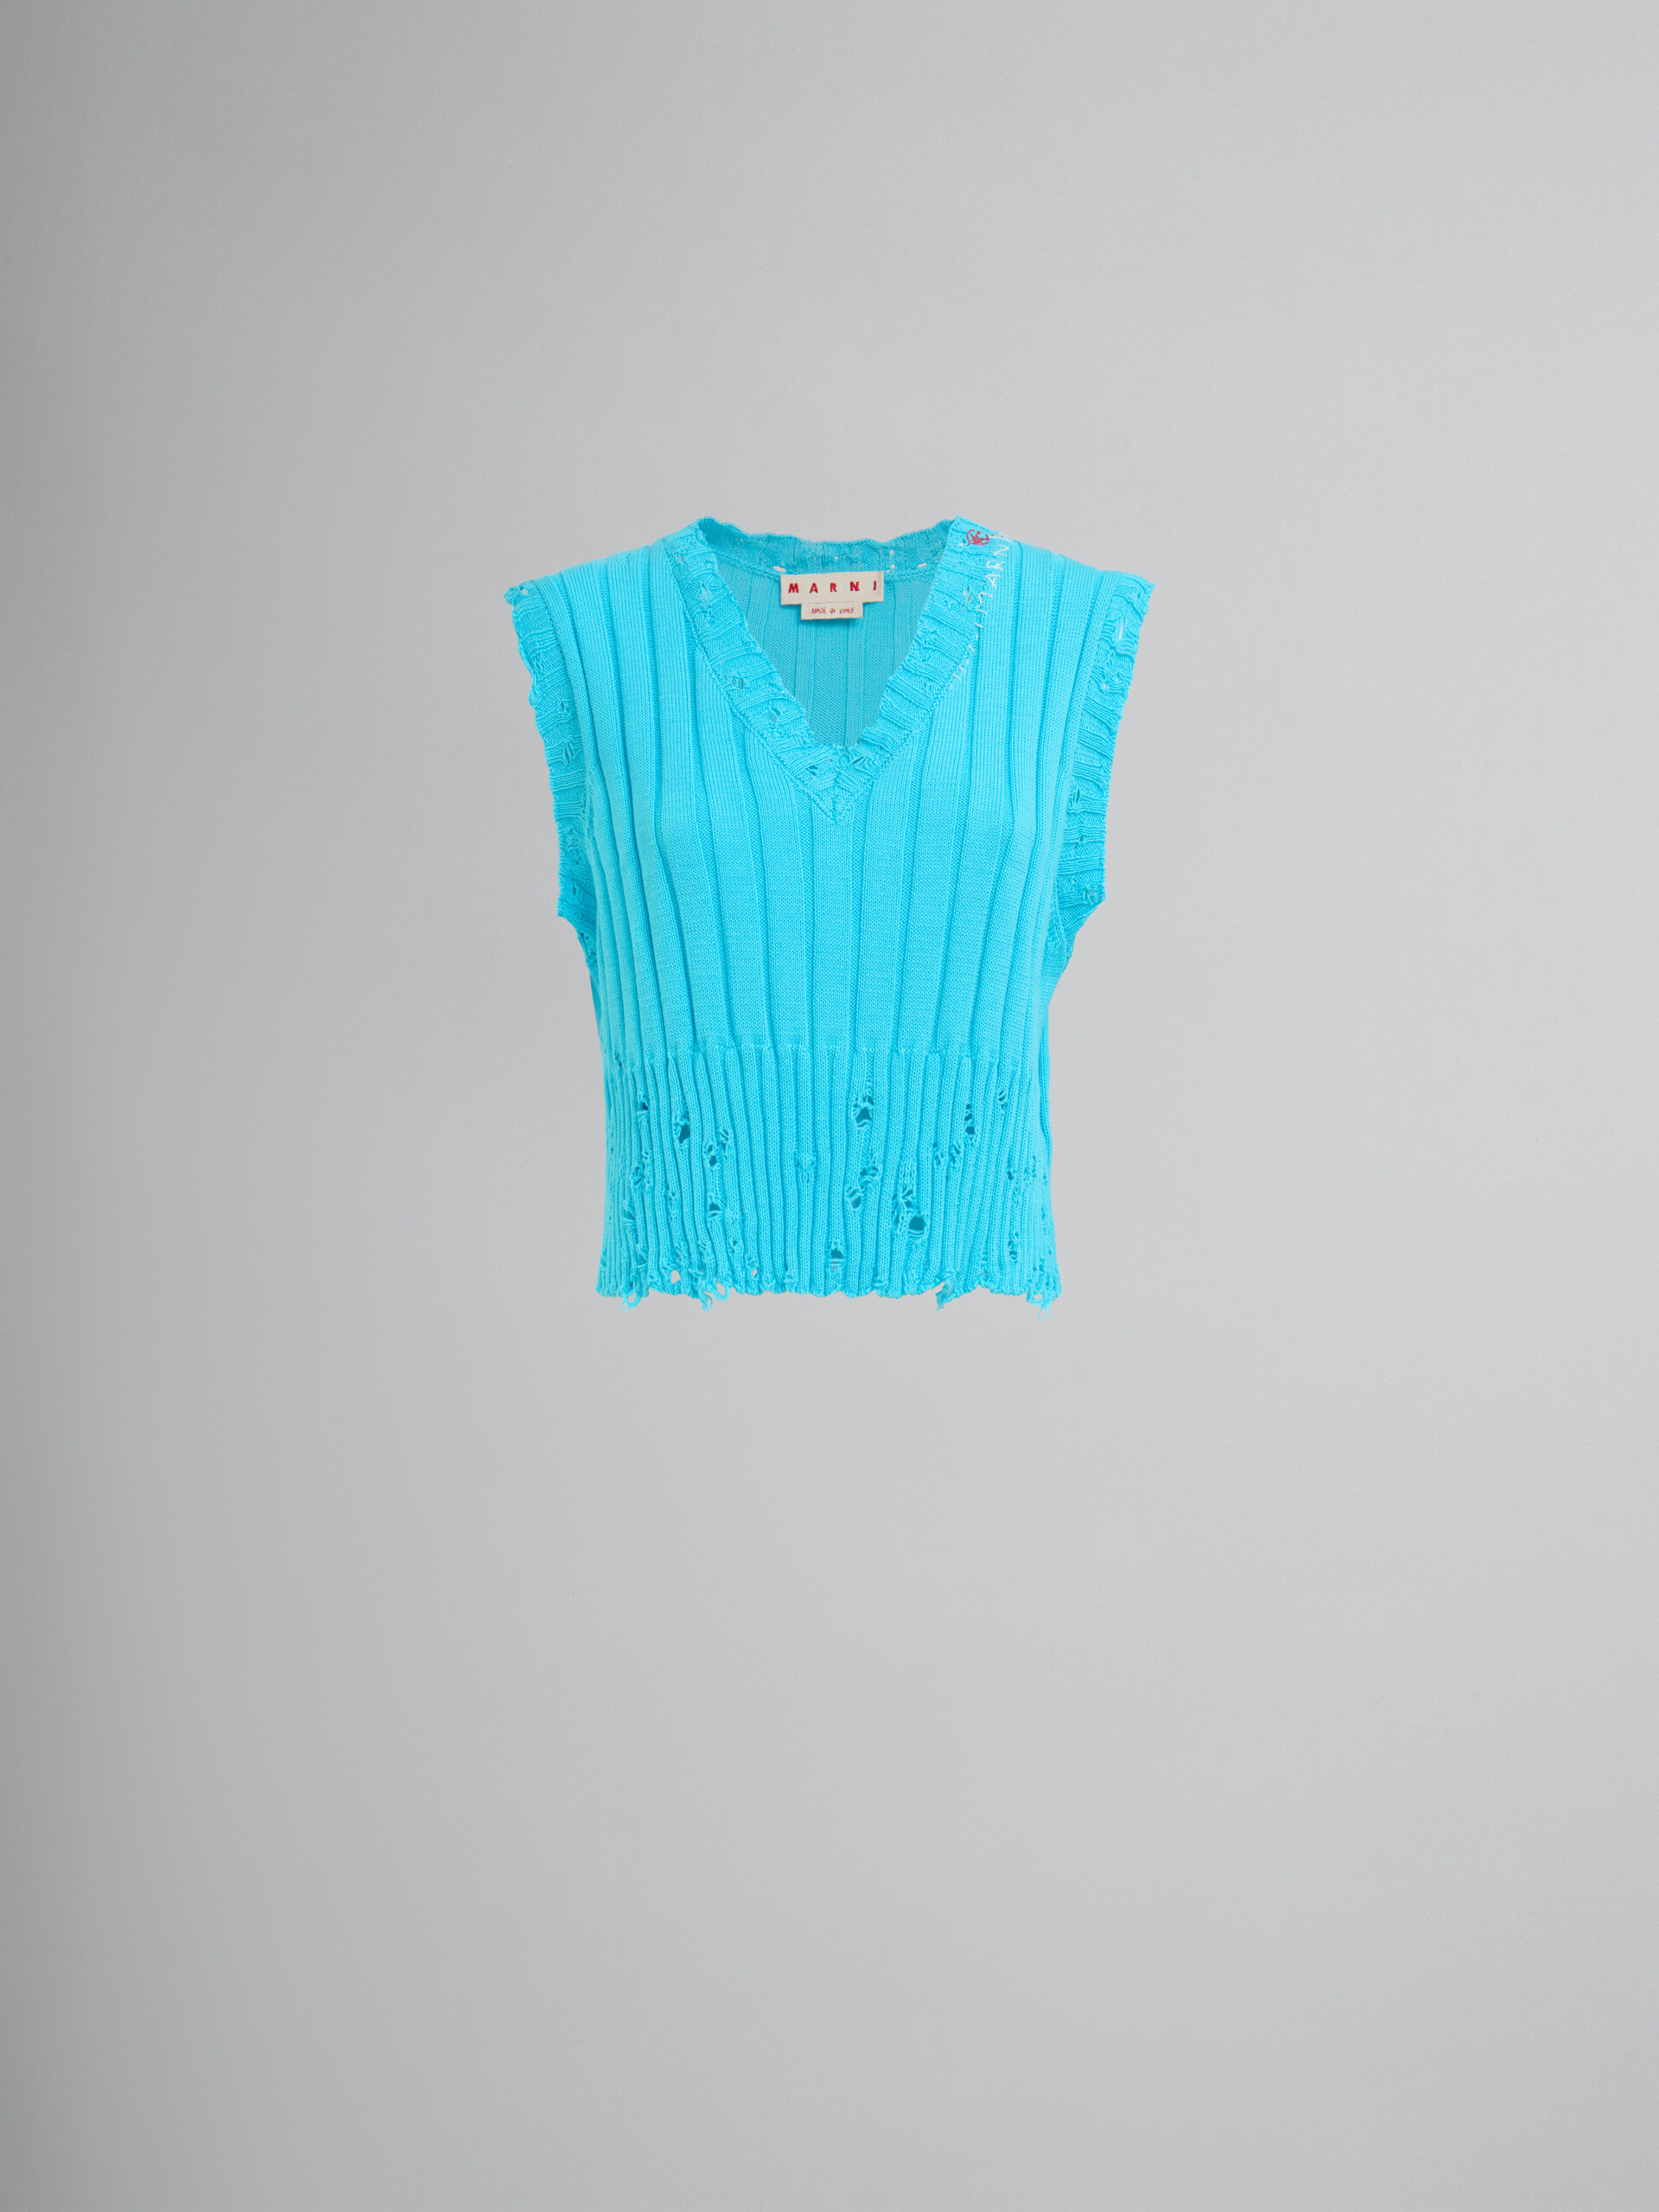 Chaleco azul de algodón acanalado efecto ajado - jerseys - Image 1